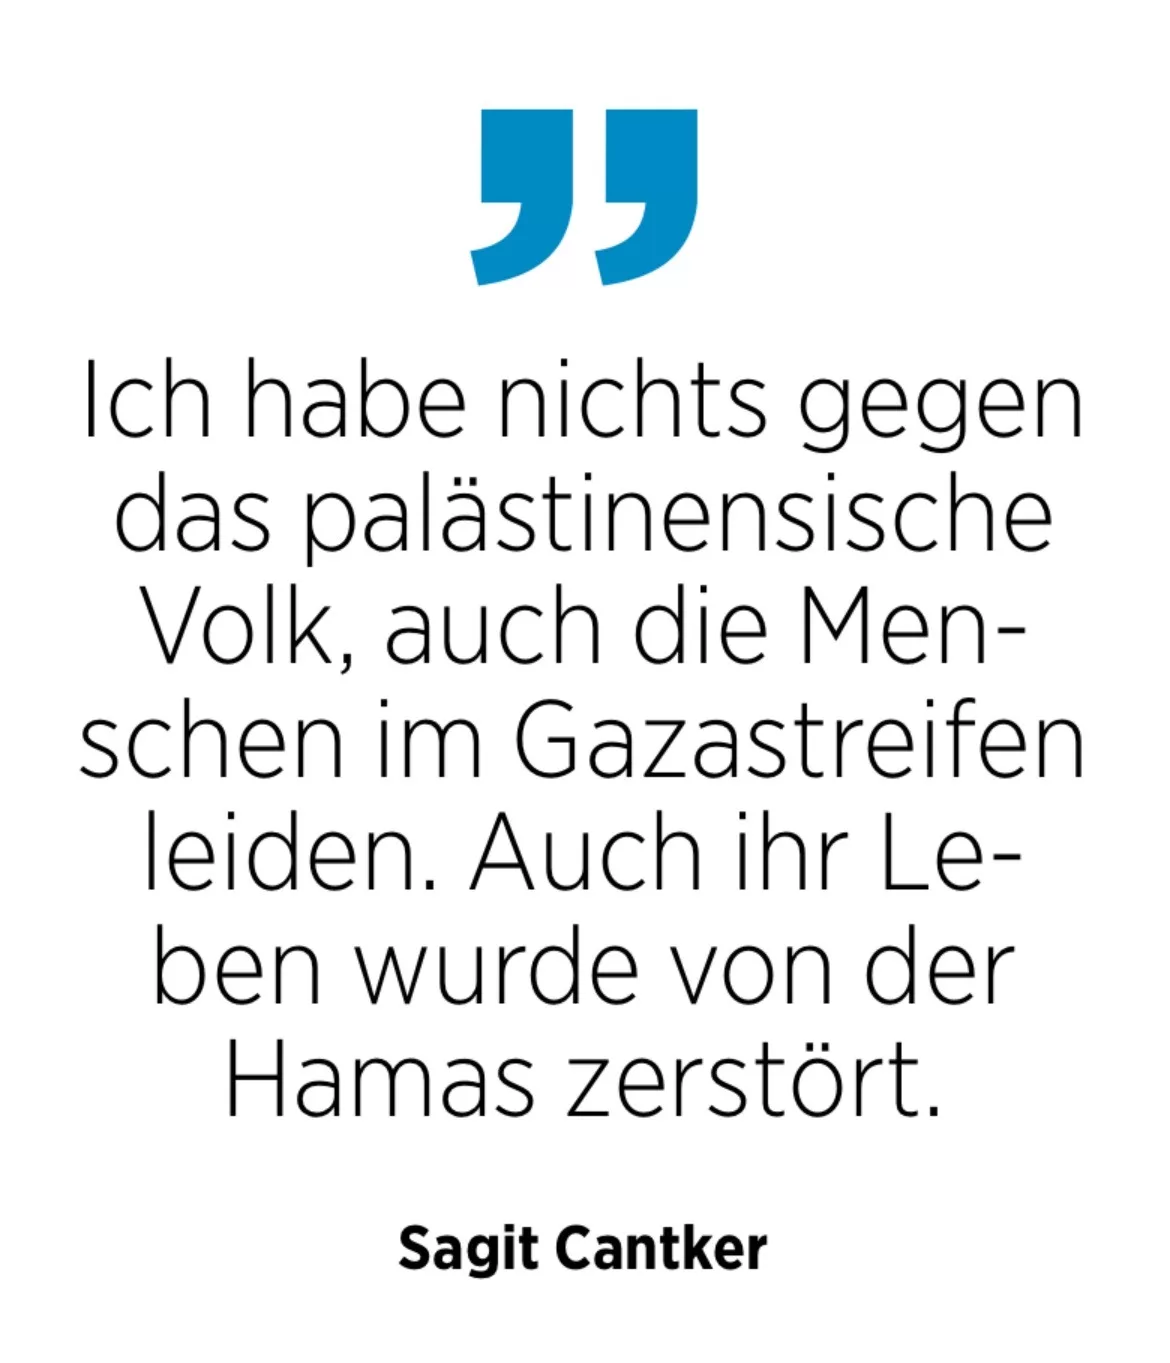 Sagit Cantker: Ich habe nichts gegen das palästinensische Volk, auch die Menschen im Gazastreifen leiden. Auch ihr Leben wurde von der Hamas zerstört.